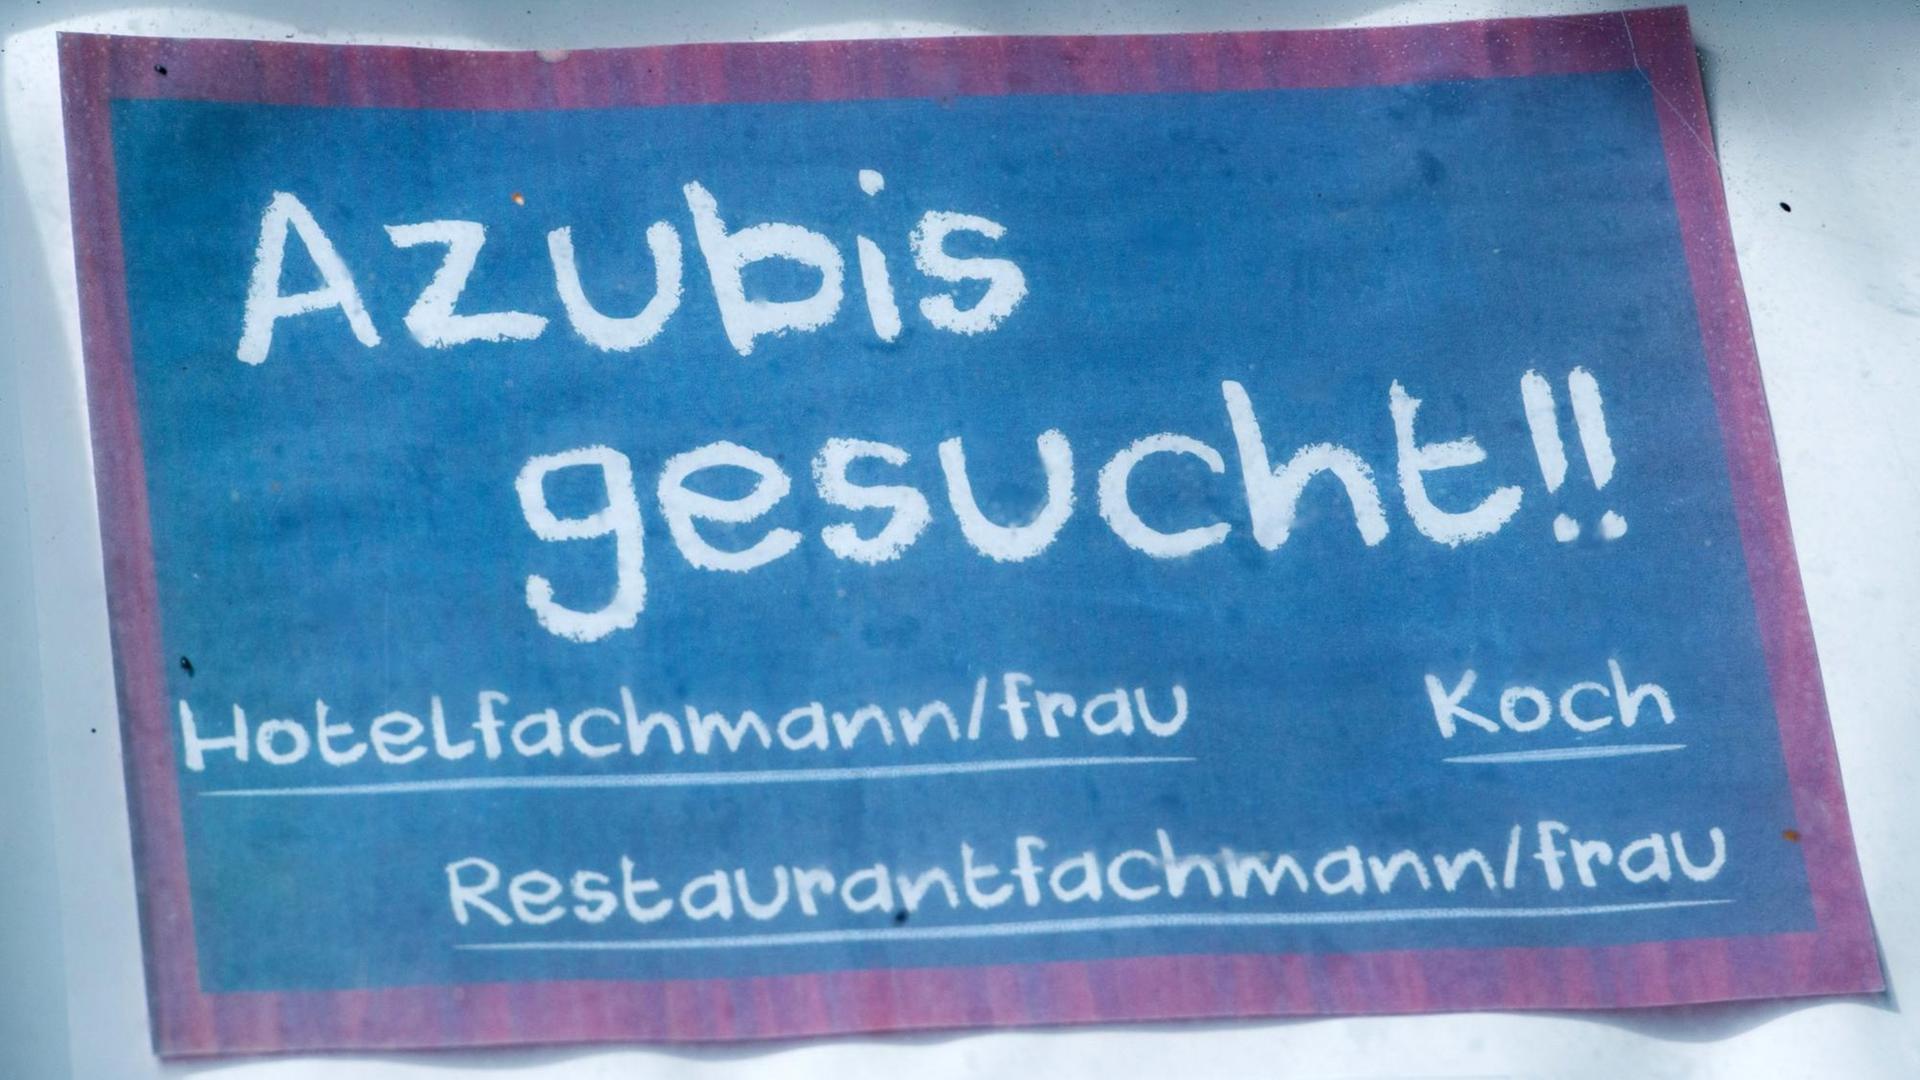 Vor einem Hotel hängt ein Schild mit dem Schriftzug "Azubis gesucht !!"